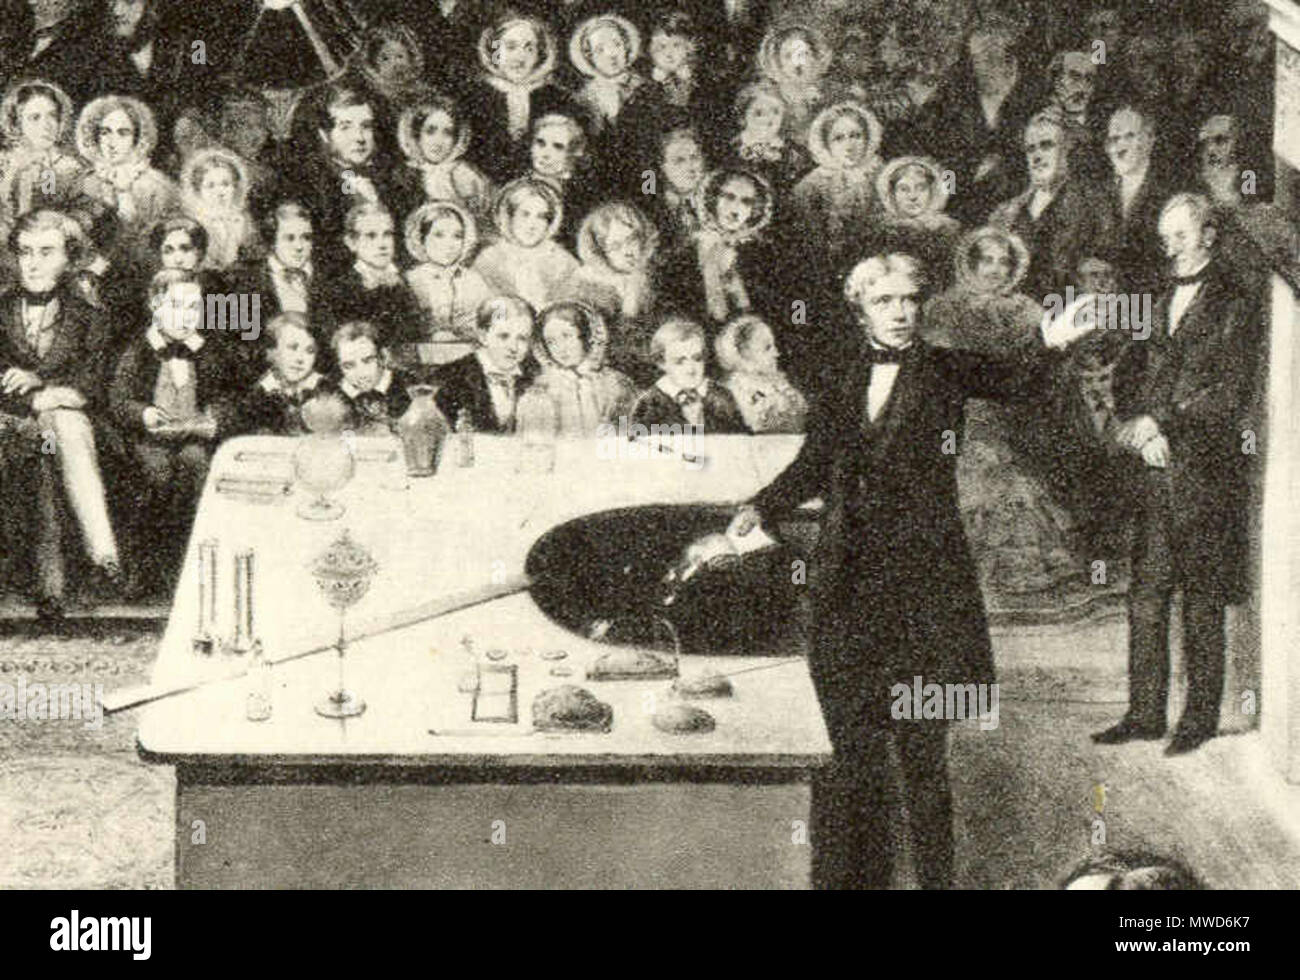 . Michael Faraday, neunzehnten Jahrhunderts Wissenschaftler und Elektriker, dargestellt von der Britischen Royal Institution Weihnachten Vortrag für Jugendliche während der Weihnachtspause der Institution im Jahre 1856. Der Künstler ist nicht bekannt. Ich würde davon ausgehen, dass diese Arbeit auch die Grundlage für die Gravur auf der 1991-93 20 Pfund Hinweis von Großbritannien (w: Bild: farady 20 poundNote.png) 202 Faraday xmas Detail Stockfoto